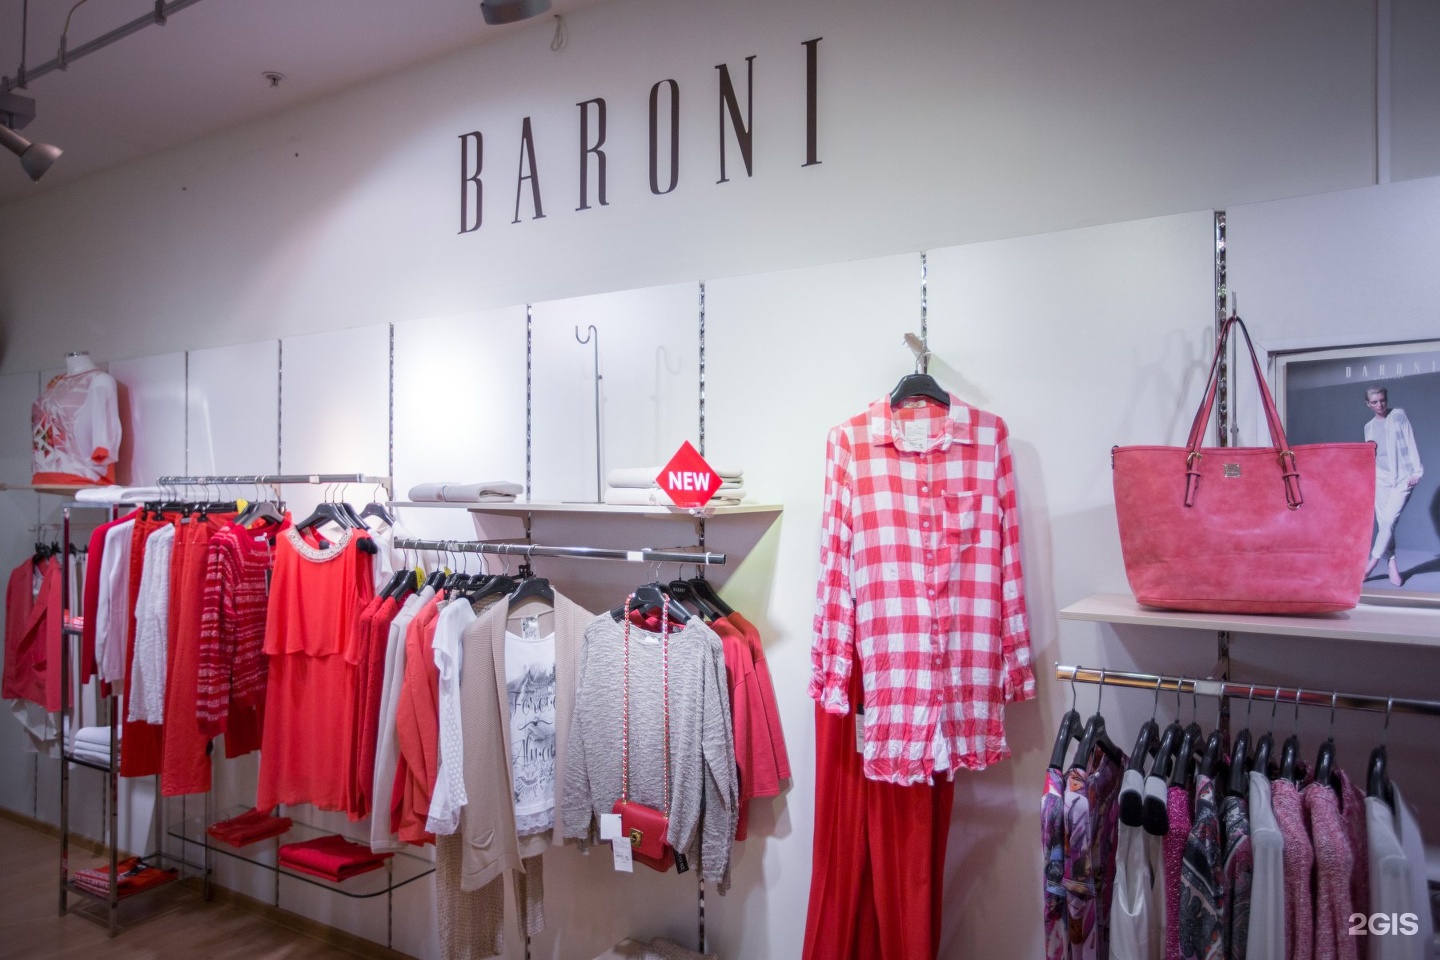 Женская одежда адреса. Барони итальянская одежда. Магазин итальянской одежды. Магазин одежды в Италии.